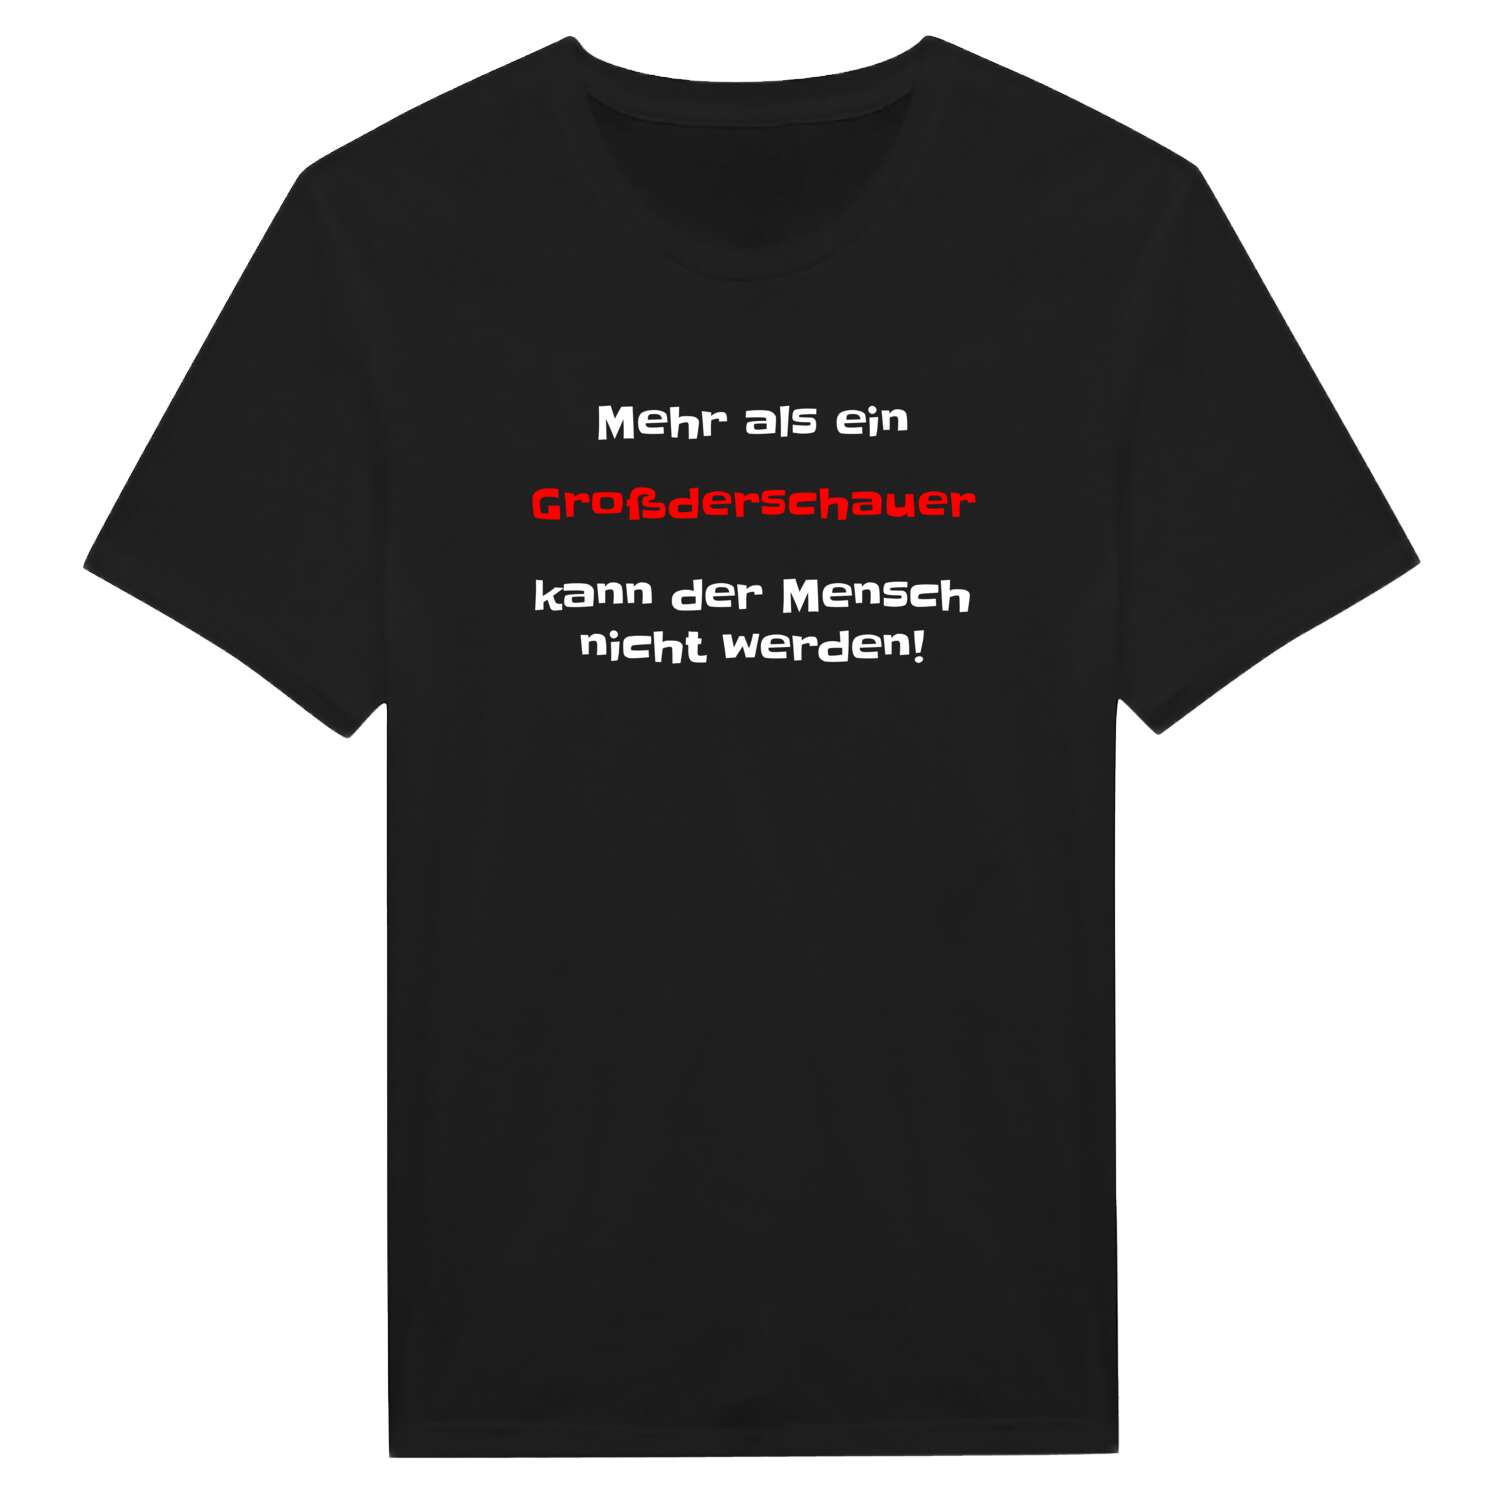 Großderschau T-Shirt »Mehr als ein«